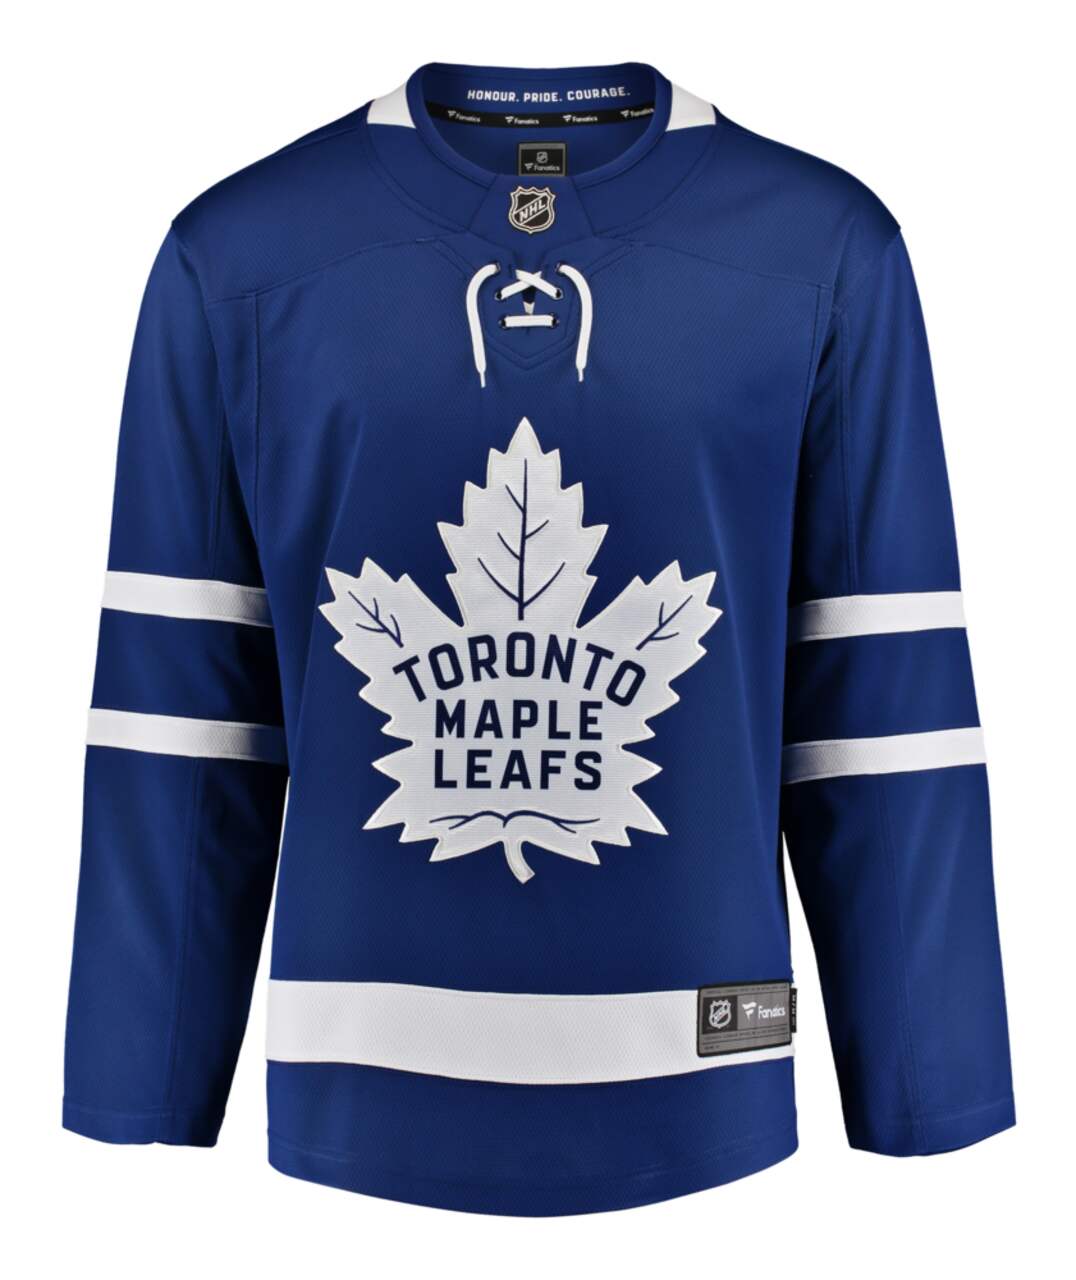 Toronto Maple Leafs Breakaway Jersey, Blue